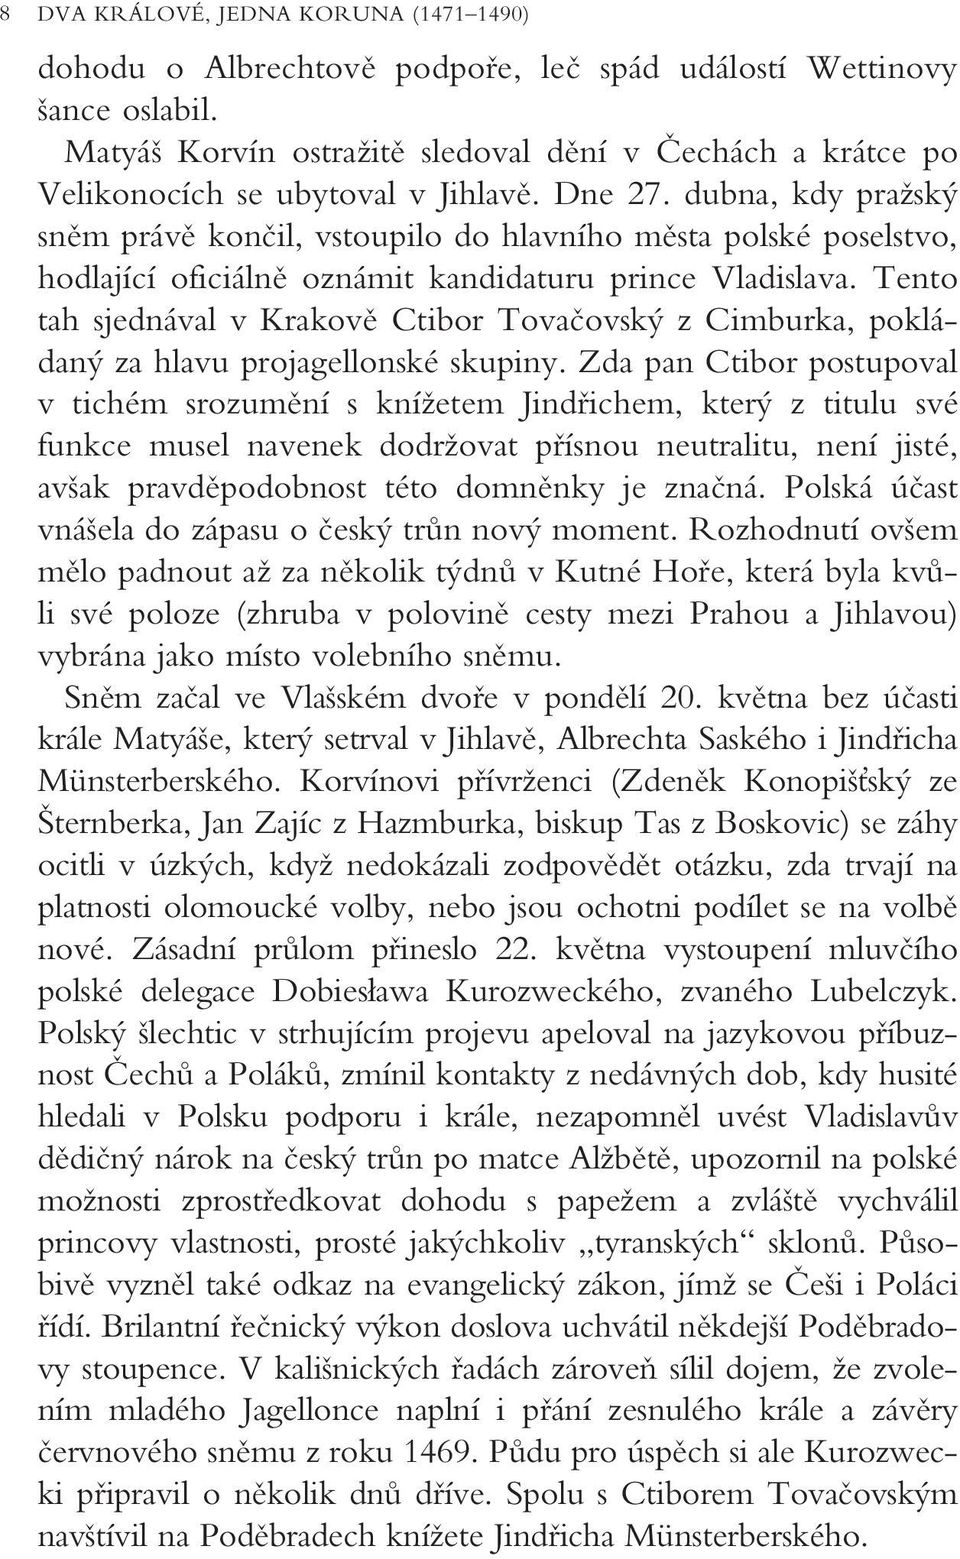 dubna, kdy praïsk snûm právû konãil, vstoupilo do hlavního mûsta polské poselstvo, hodlající oficiálnû oznámit kandidaturu prince Vladislava.